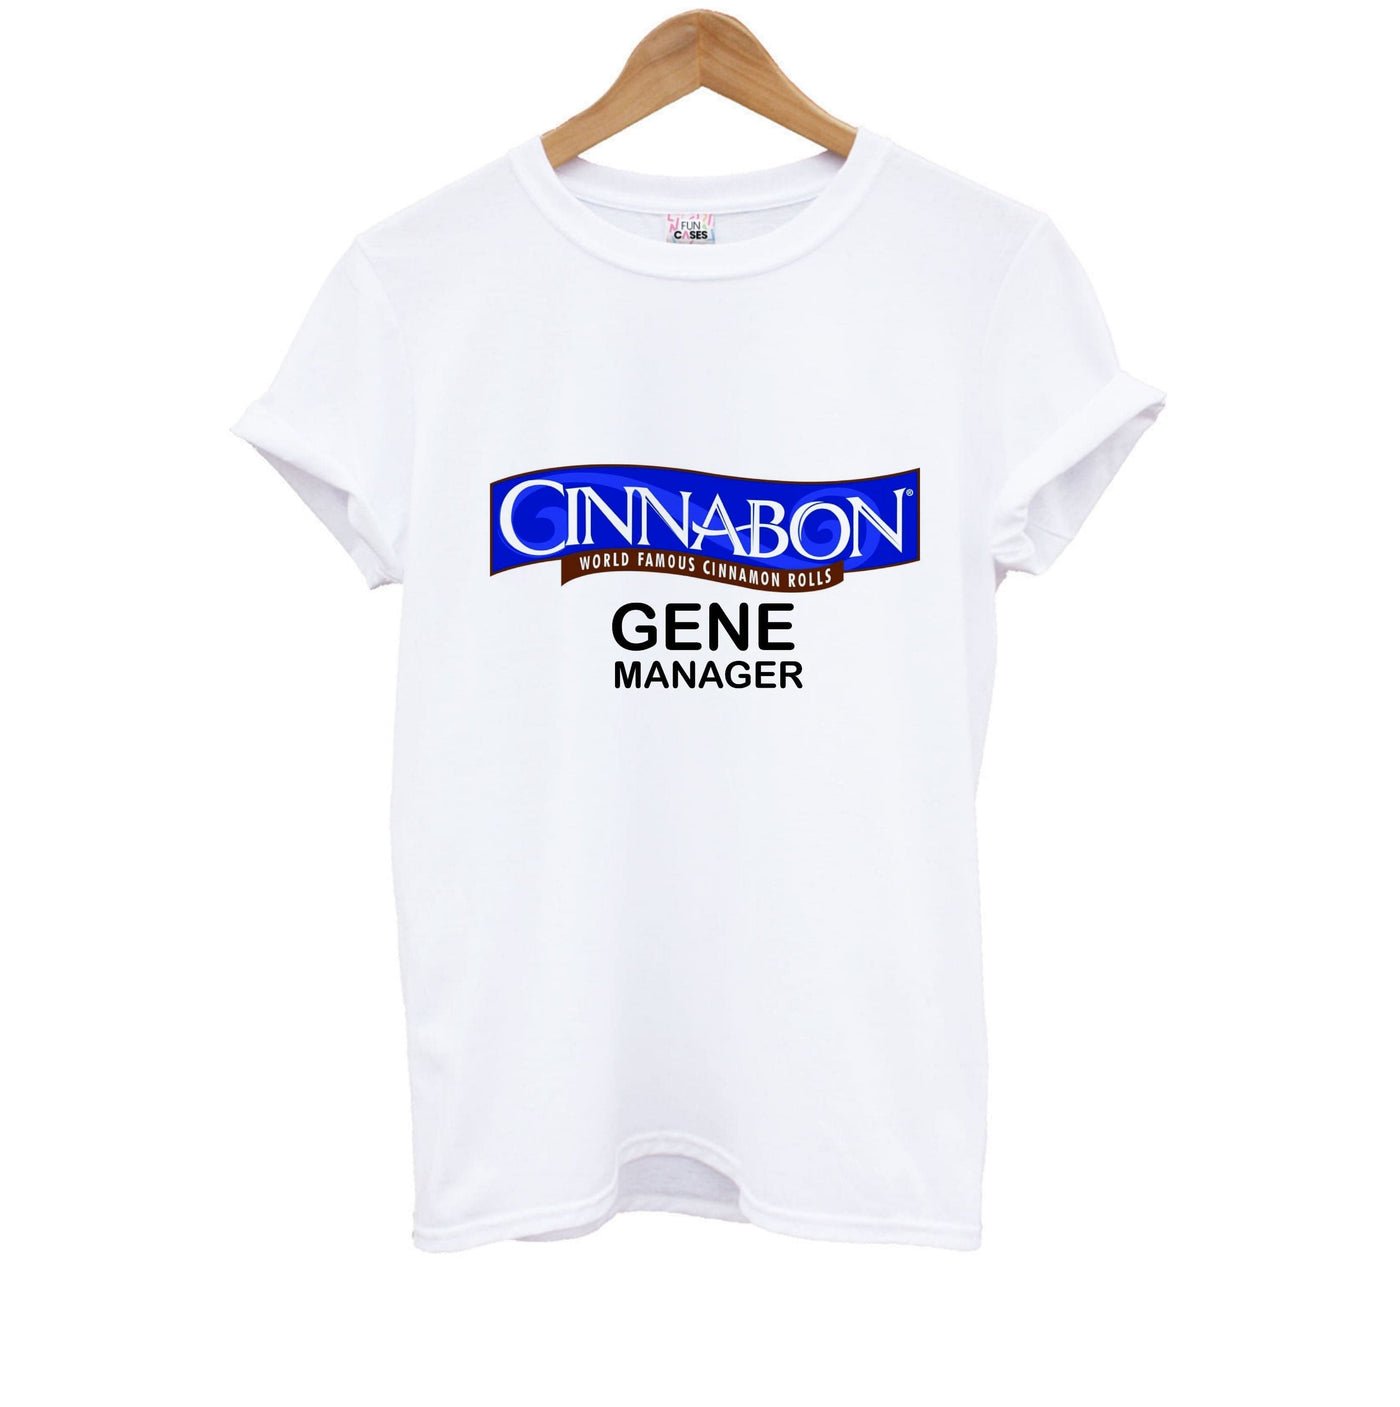 Cinnabon Gene Manager - Better Call Saul Kids T-Shirt